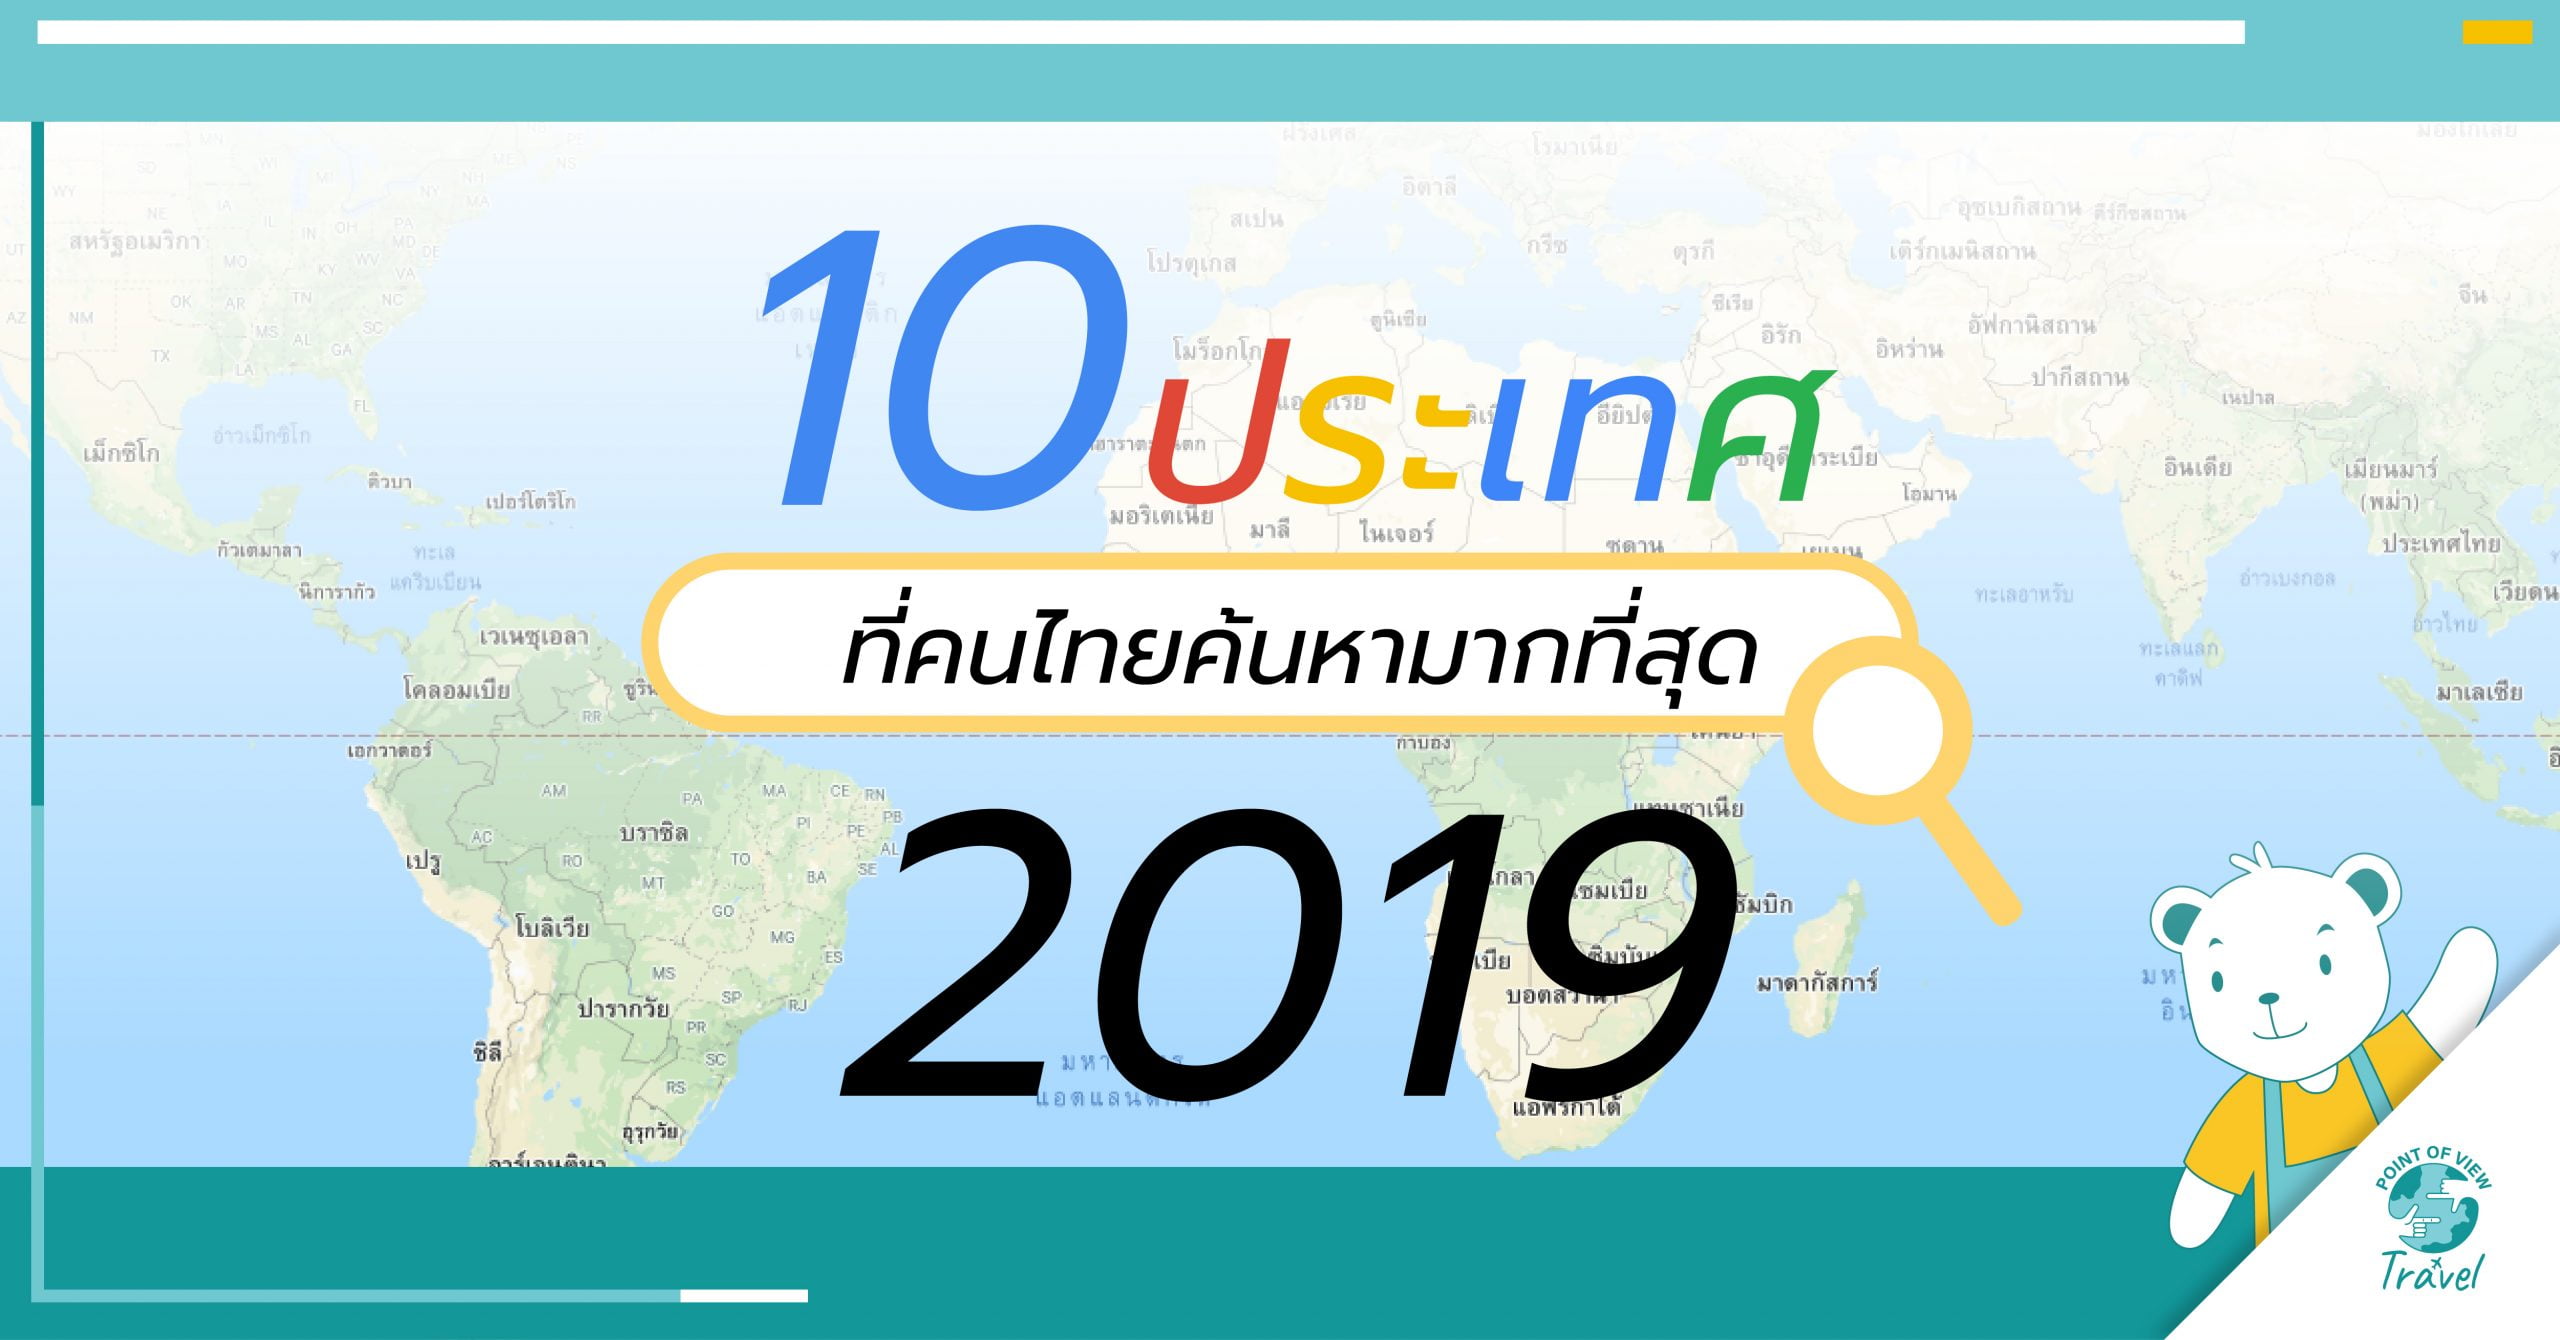 หาที่เที่ยว 10 ประเทศ สถานที่ ท่องเที่ยวต่างประเทศ คนไทยถาม Google มากที่สุด ในปี 2019